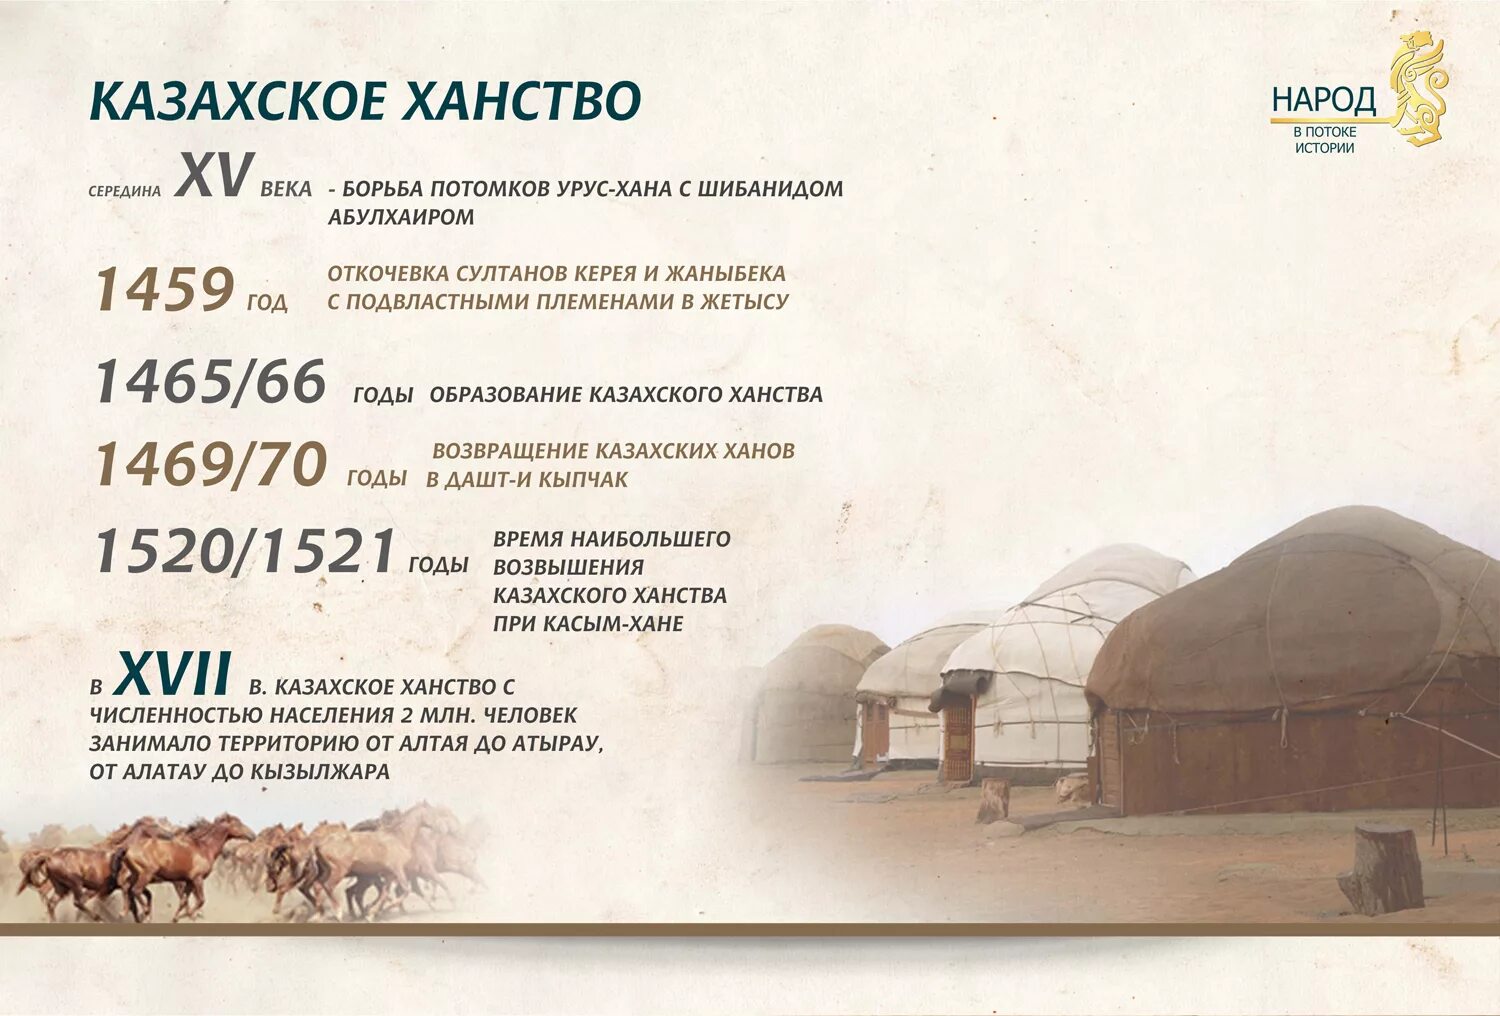 Образование казахского ханства. Год основания казахского ханства. Год образования казахского ханства. Когда образовалалось казахское ханство. Казахские ханы история